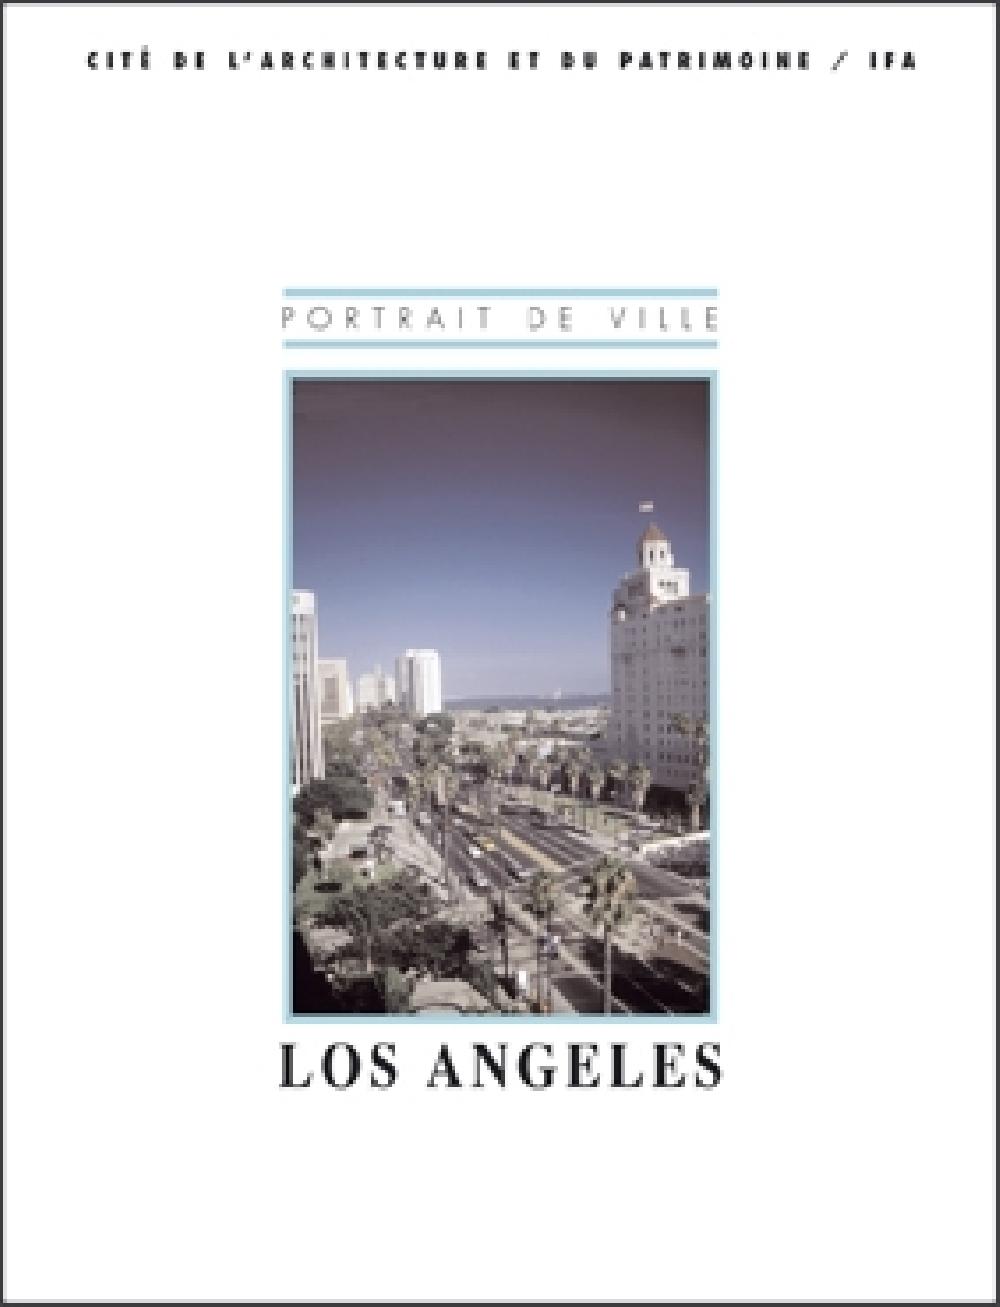 Los Angeles / Portrait de Ville